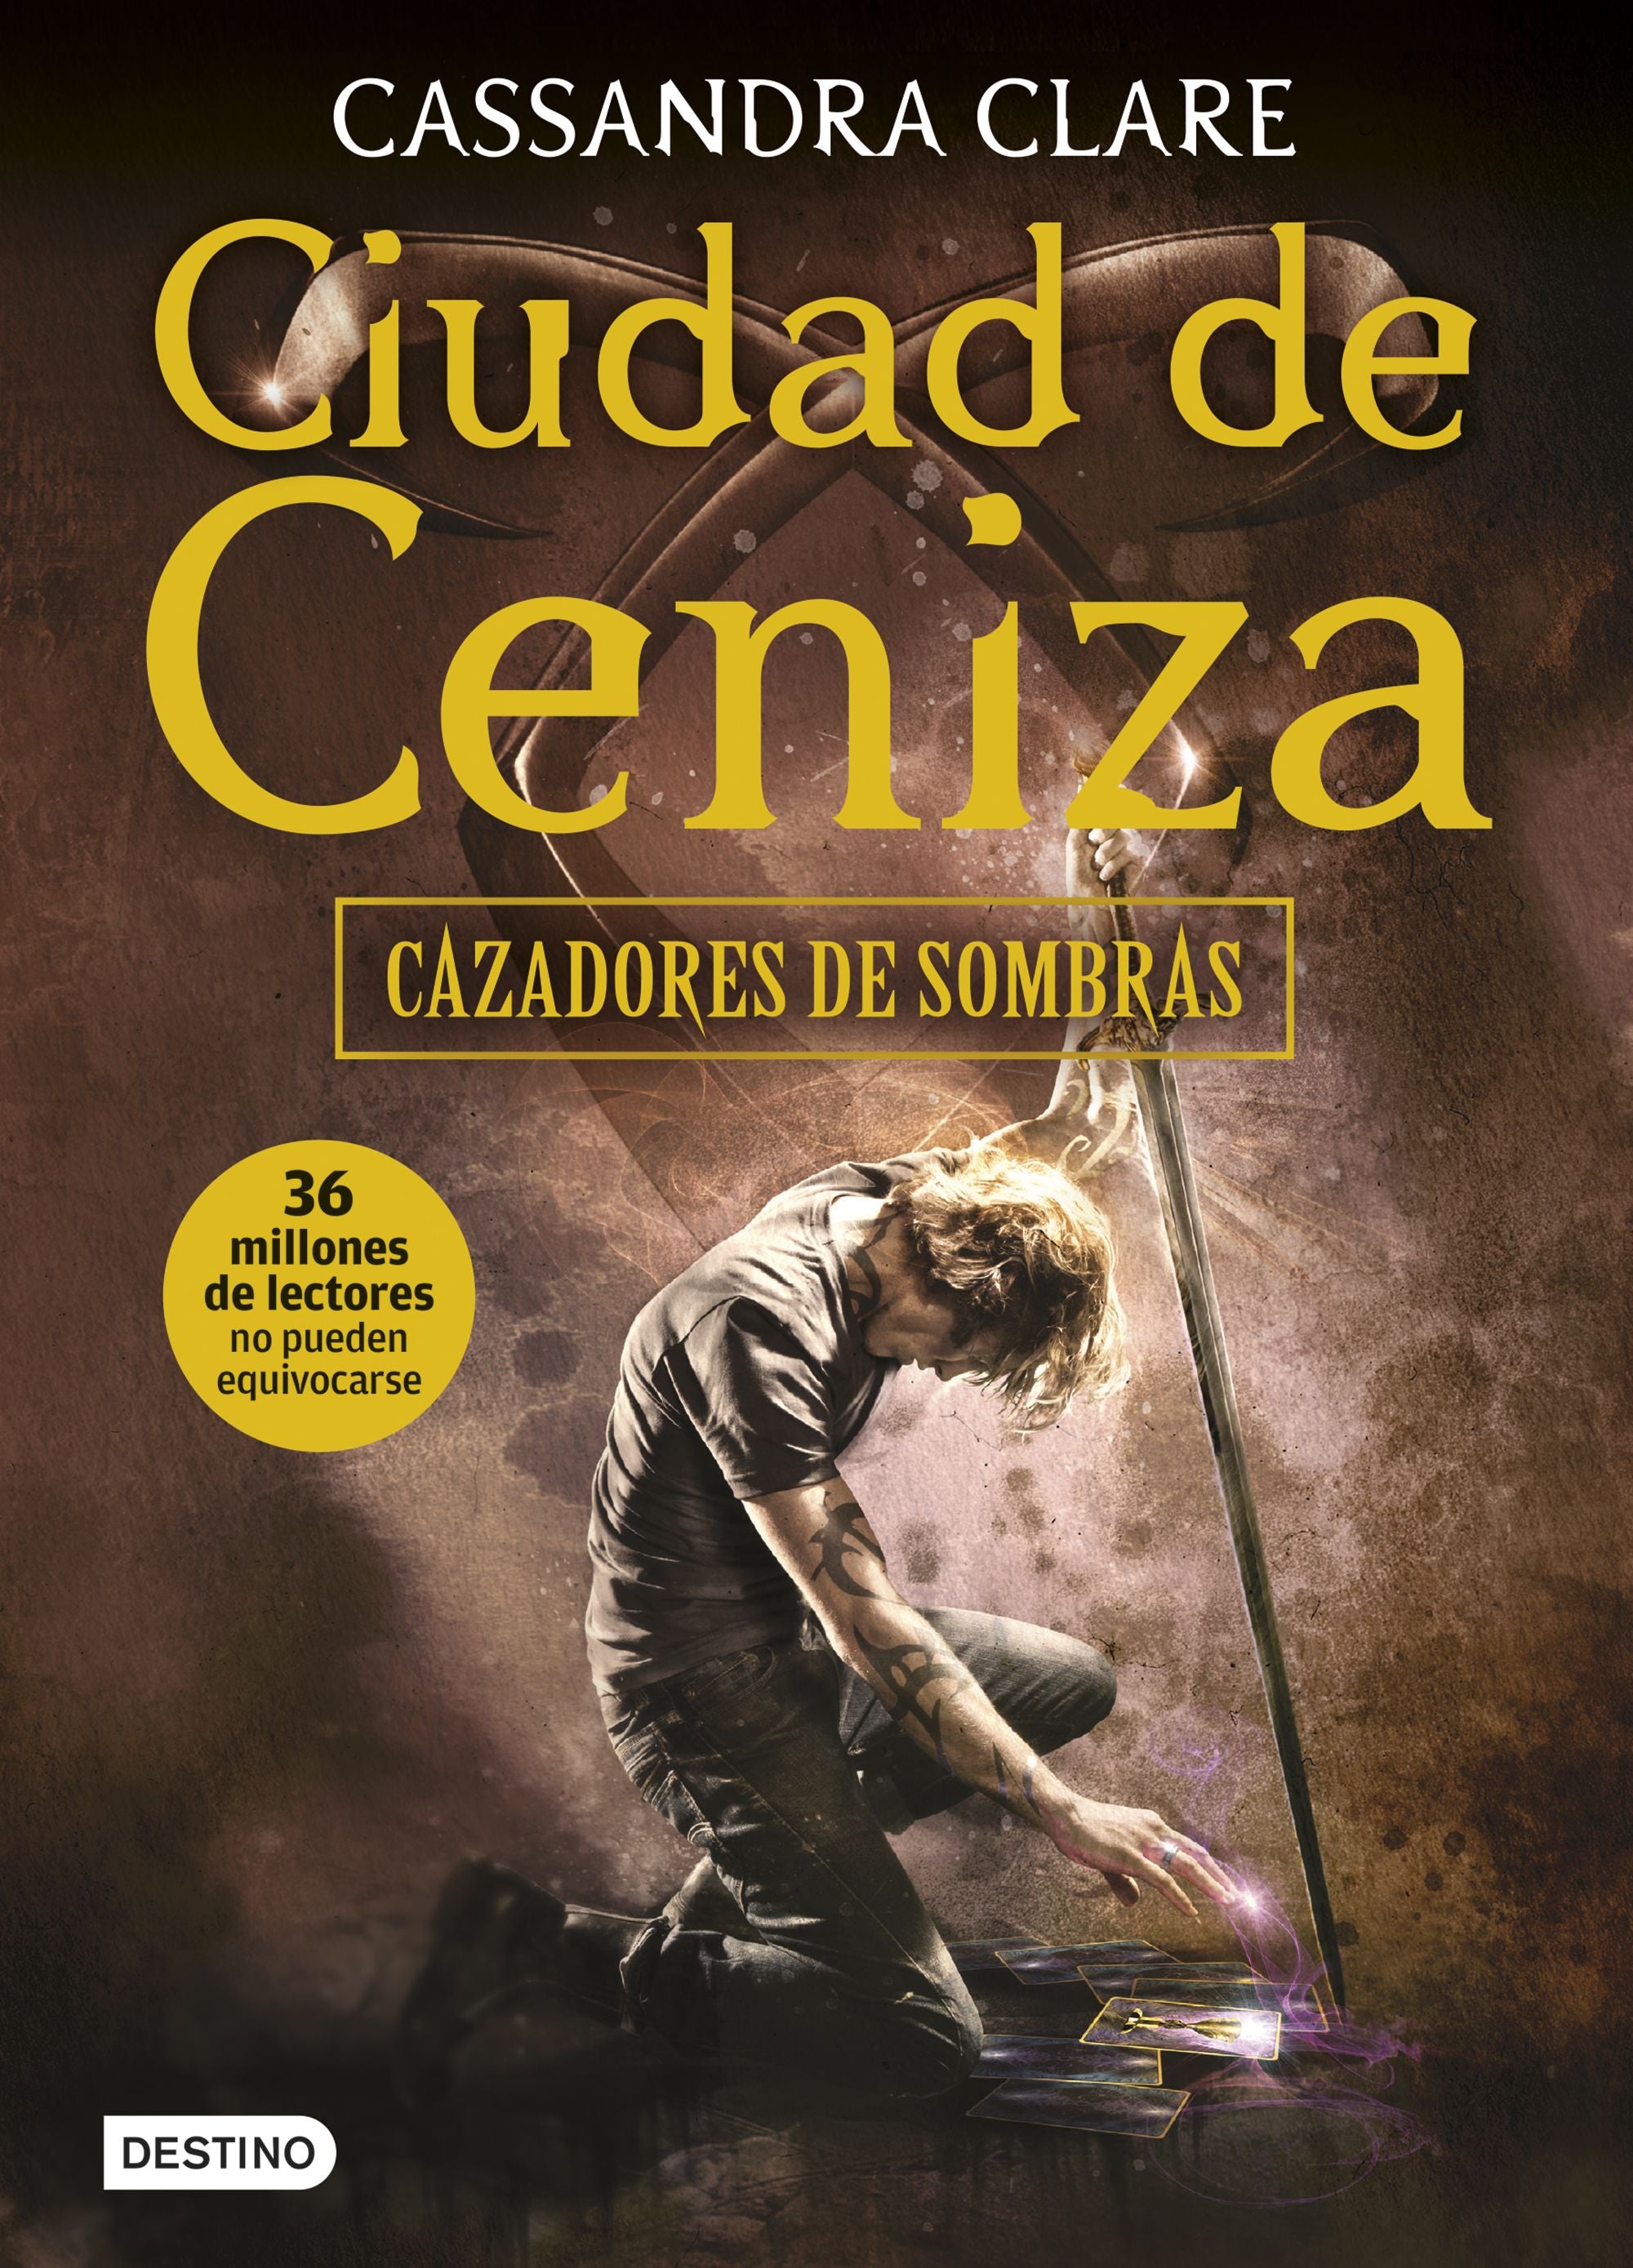 Libro Cassandra Clare - Ciudad de Ceniza